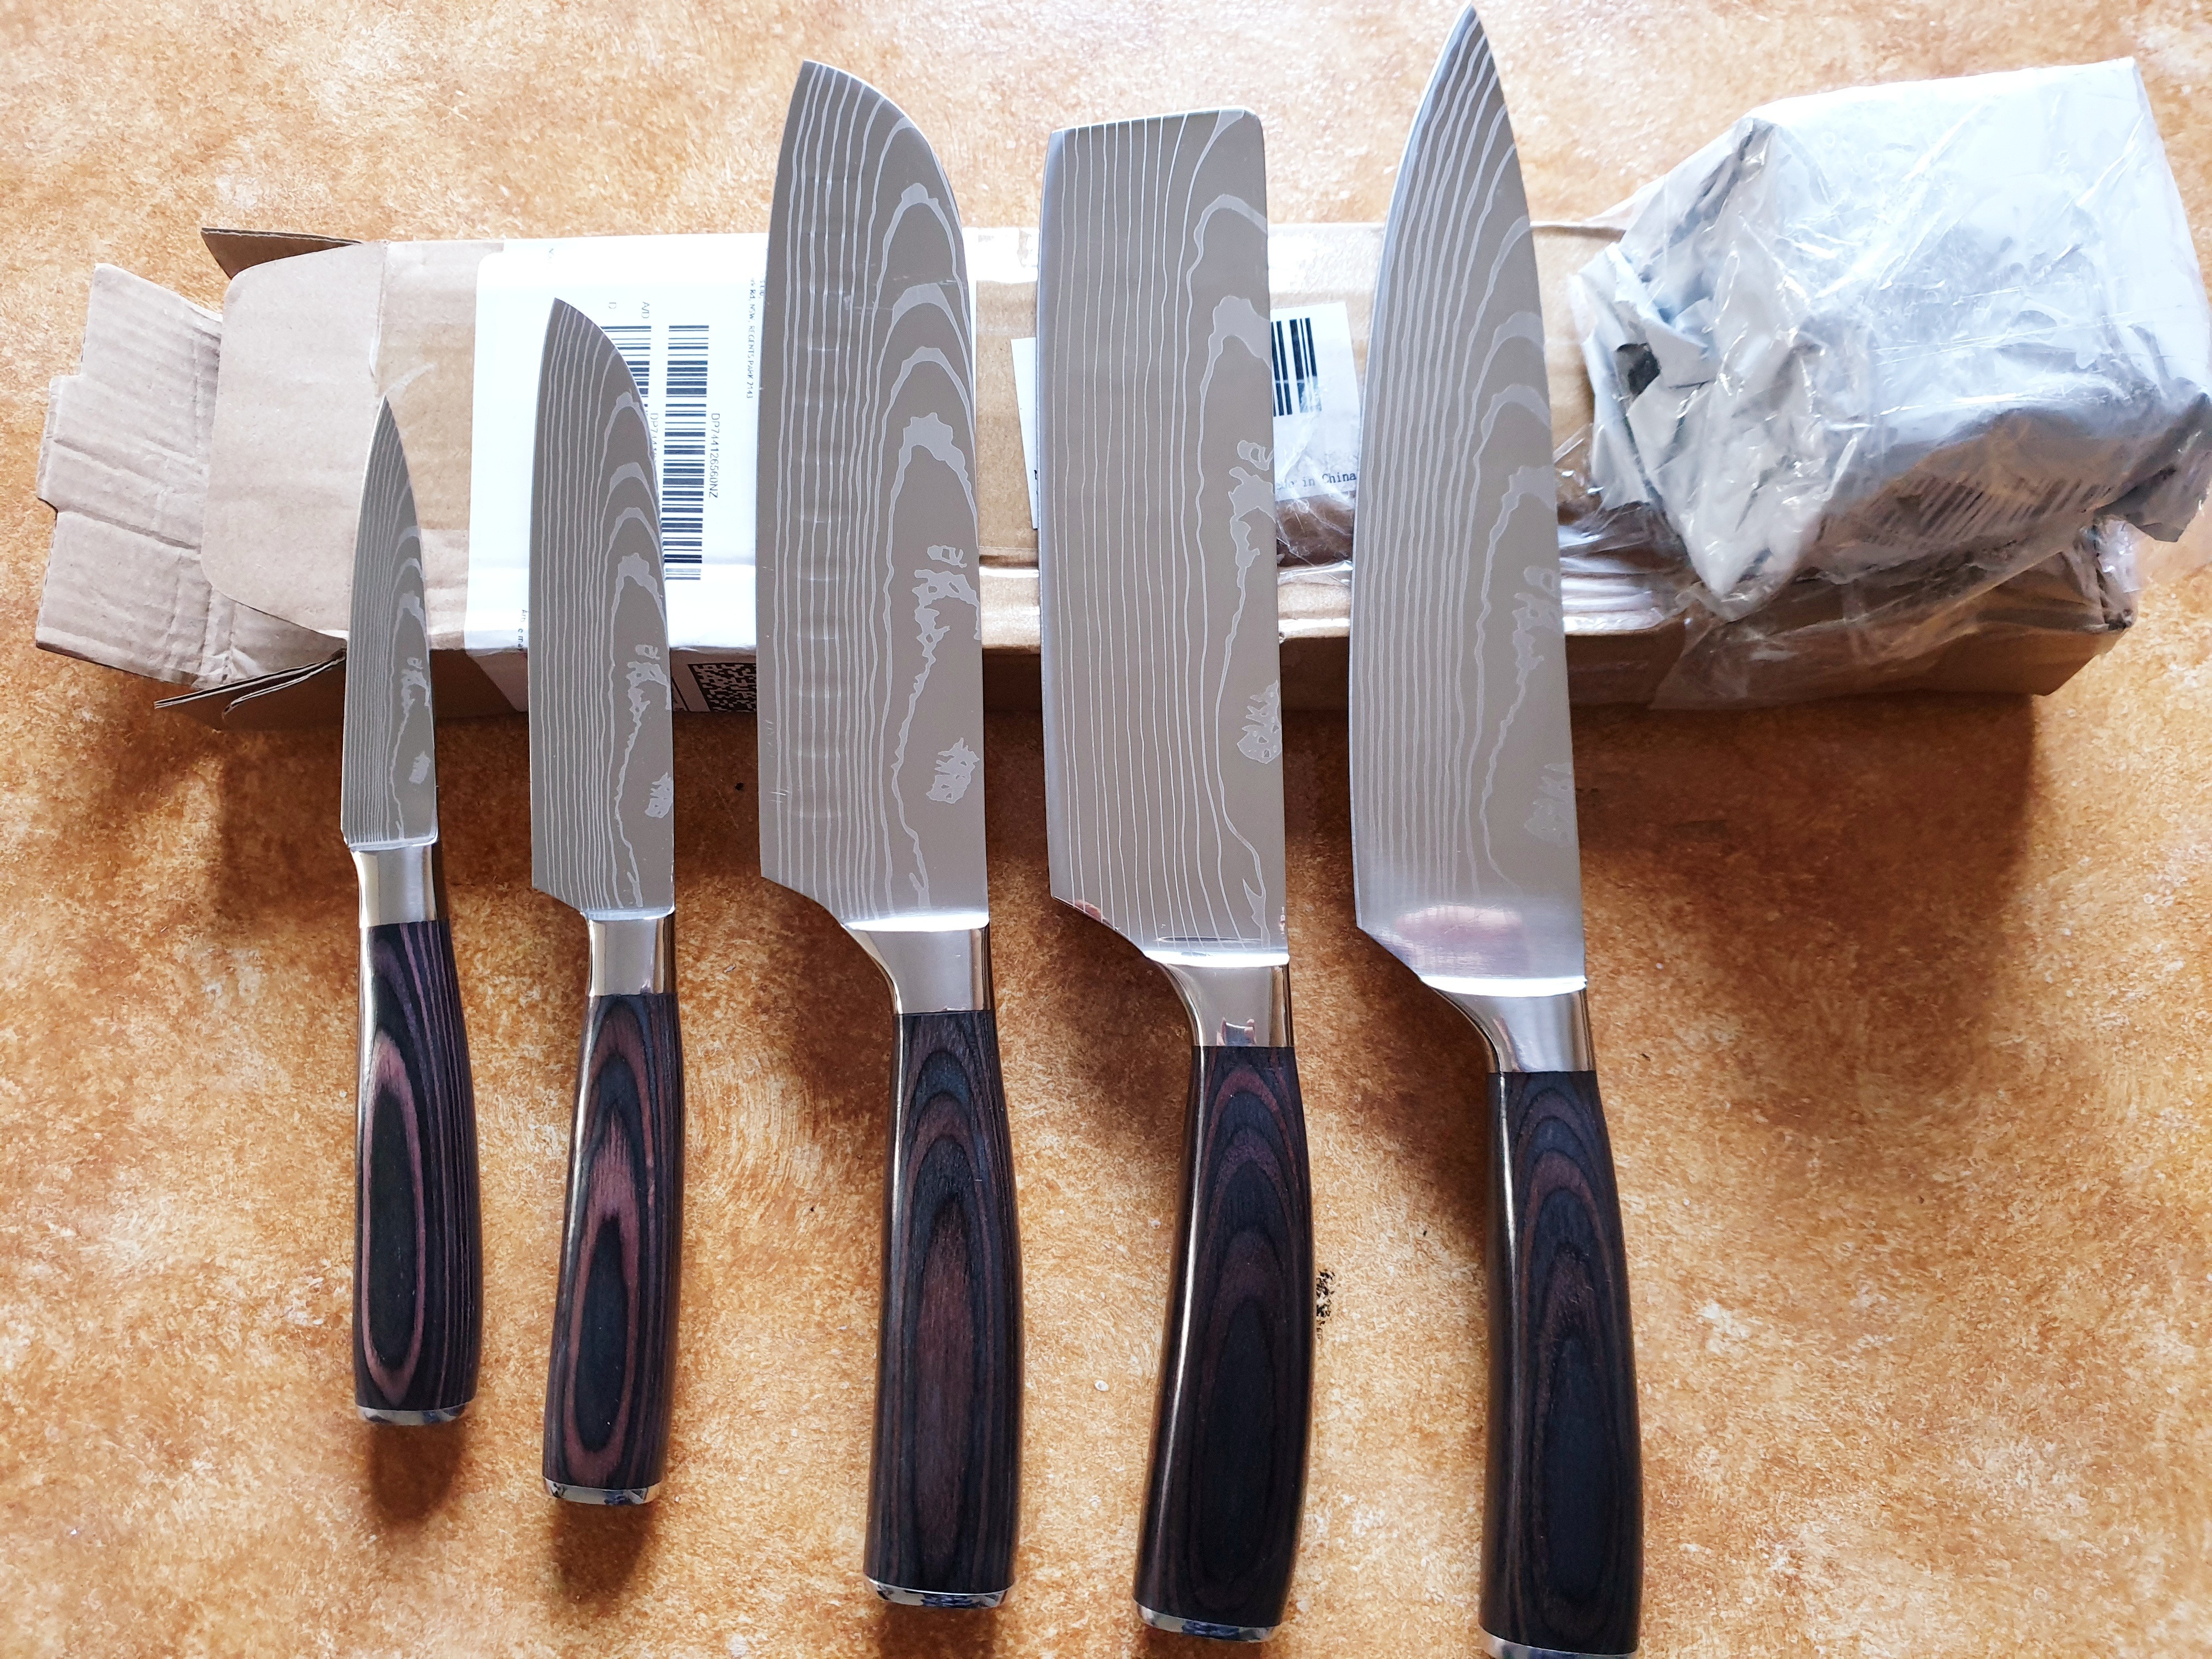  Yatoshi 7 Knife Set - Pro Kitchen Knife Set Ultra